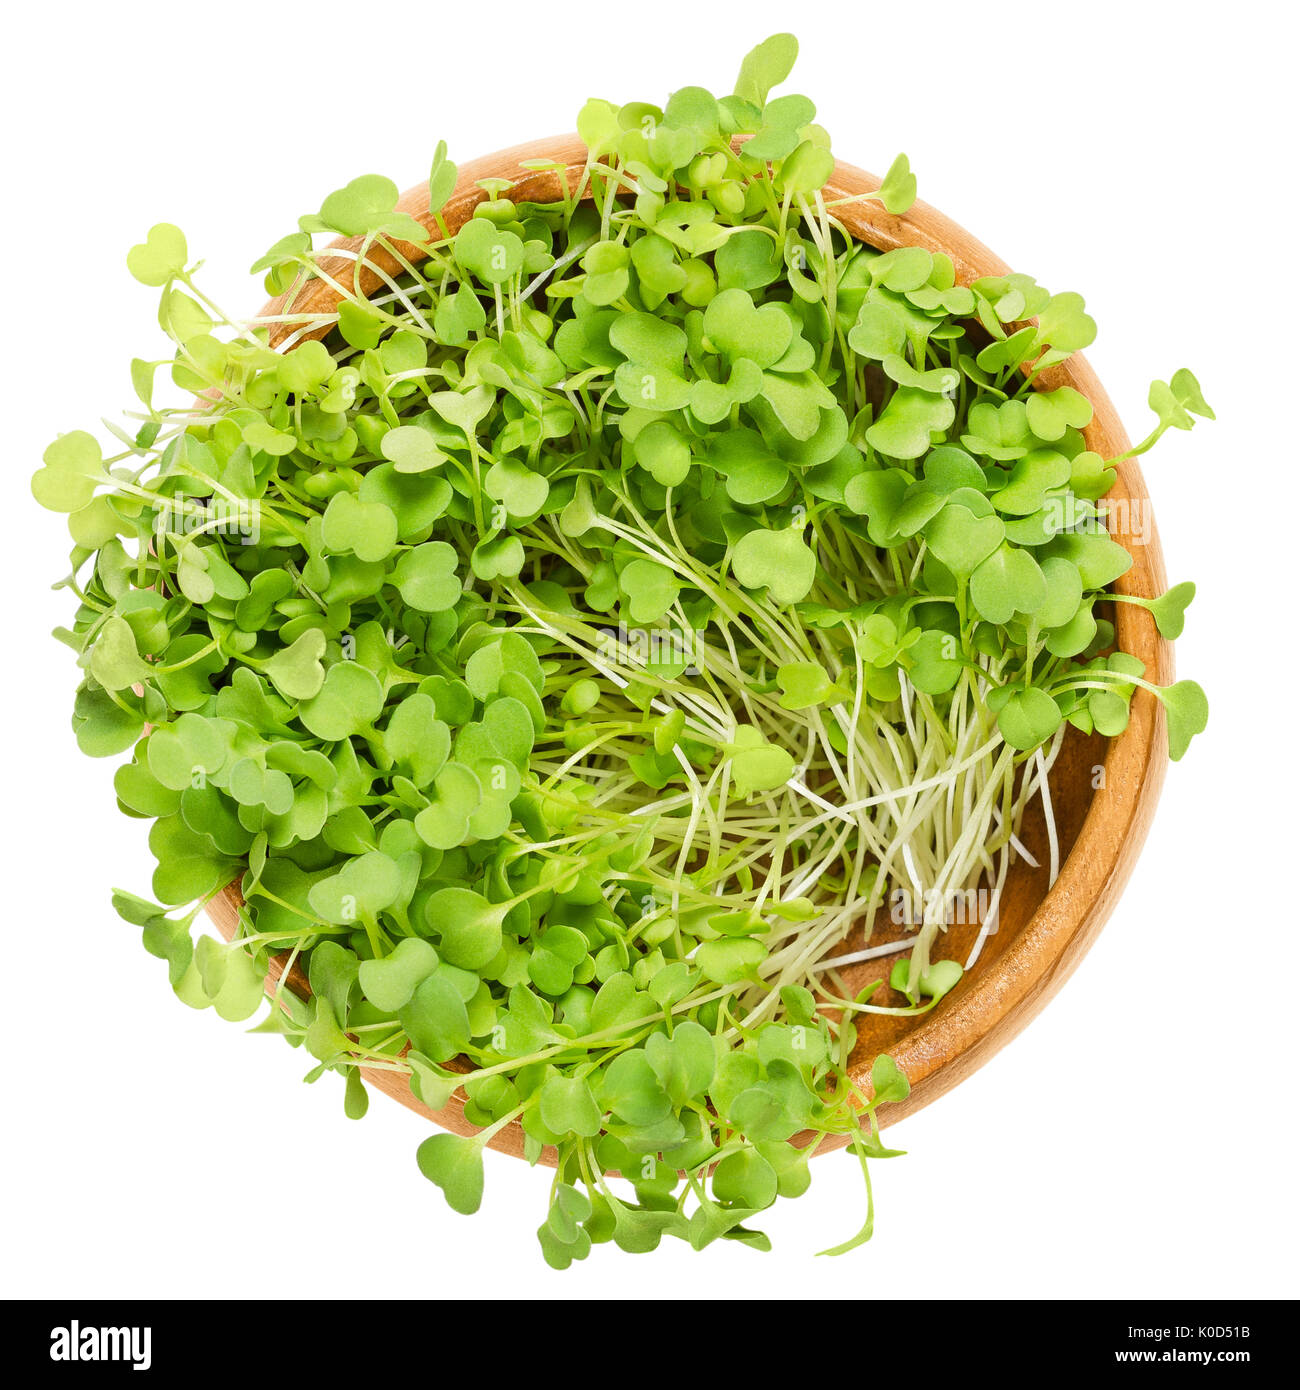 Rucola Salat Sprossen in Houten. Blätter und keimblättern von Eruca Sativa, auch Rucola, Rucola oder rugula. Salat Gemüse- und microgreen. Stockfoto